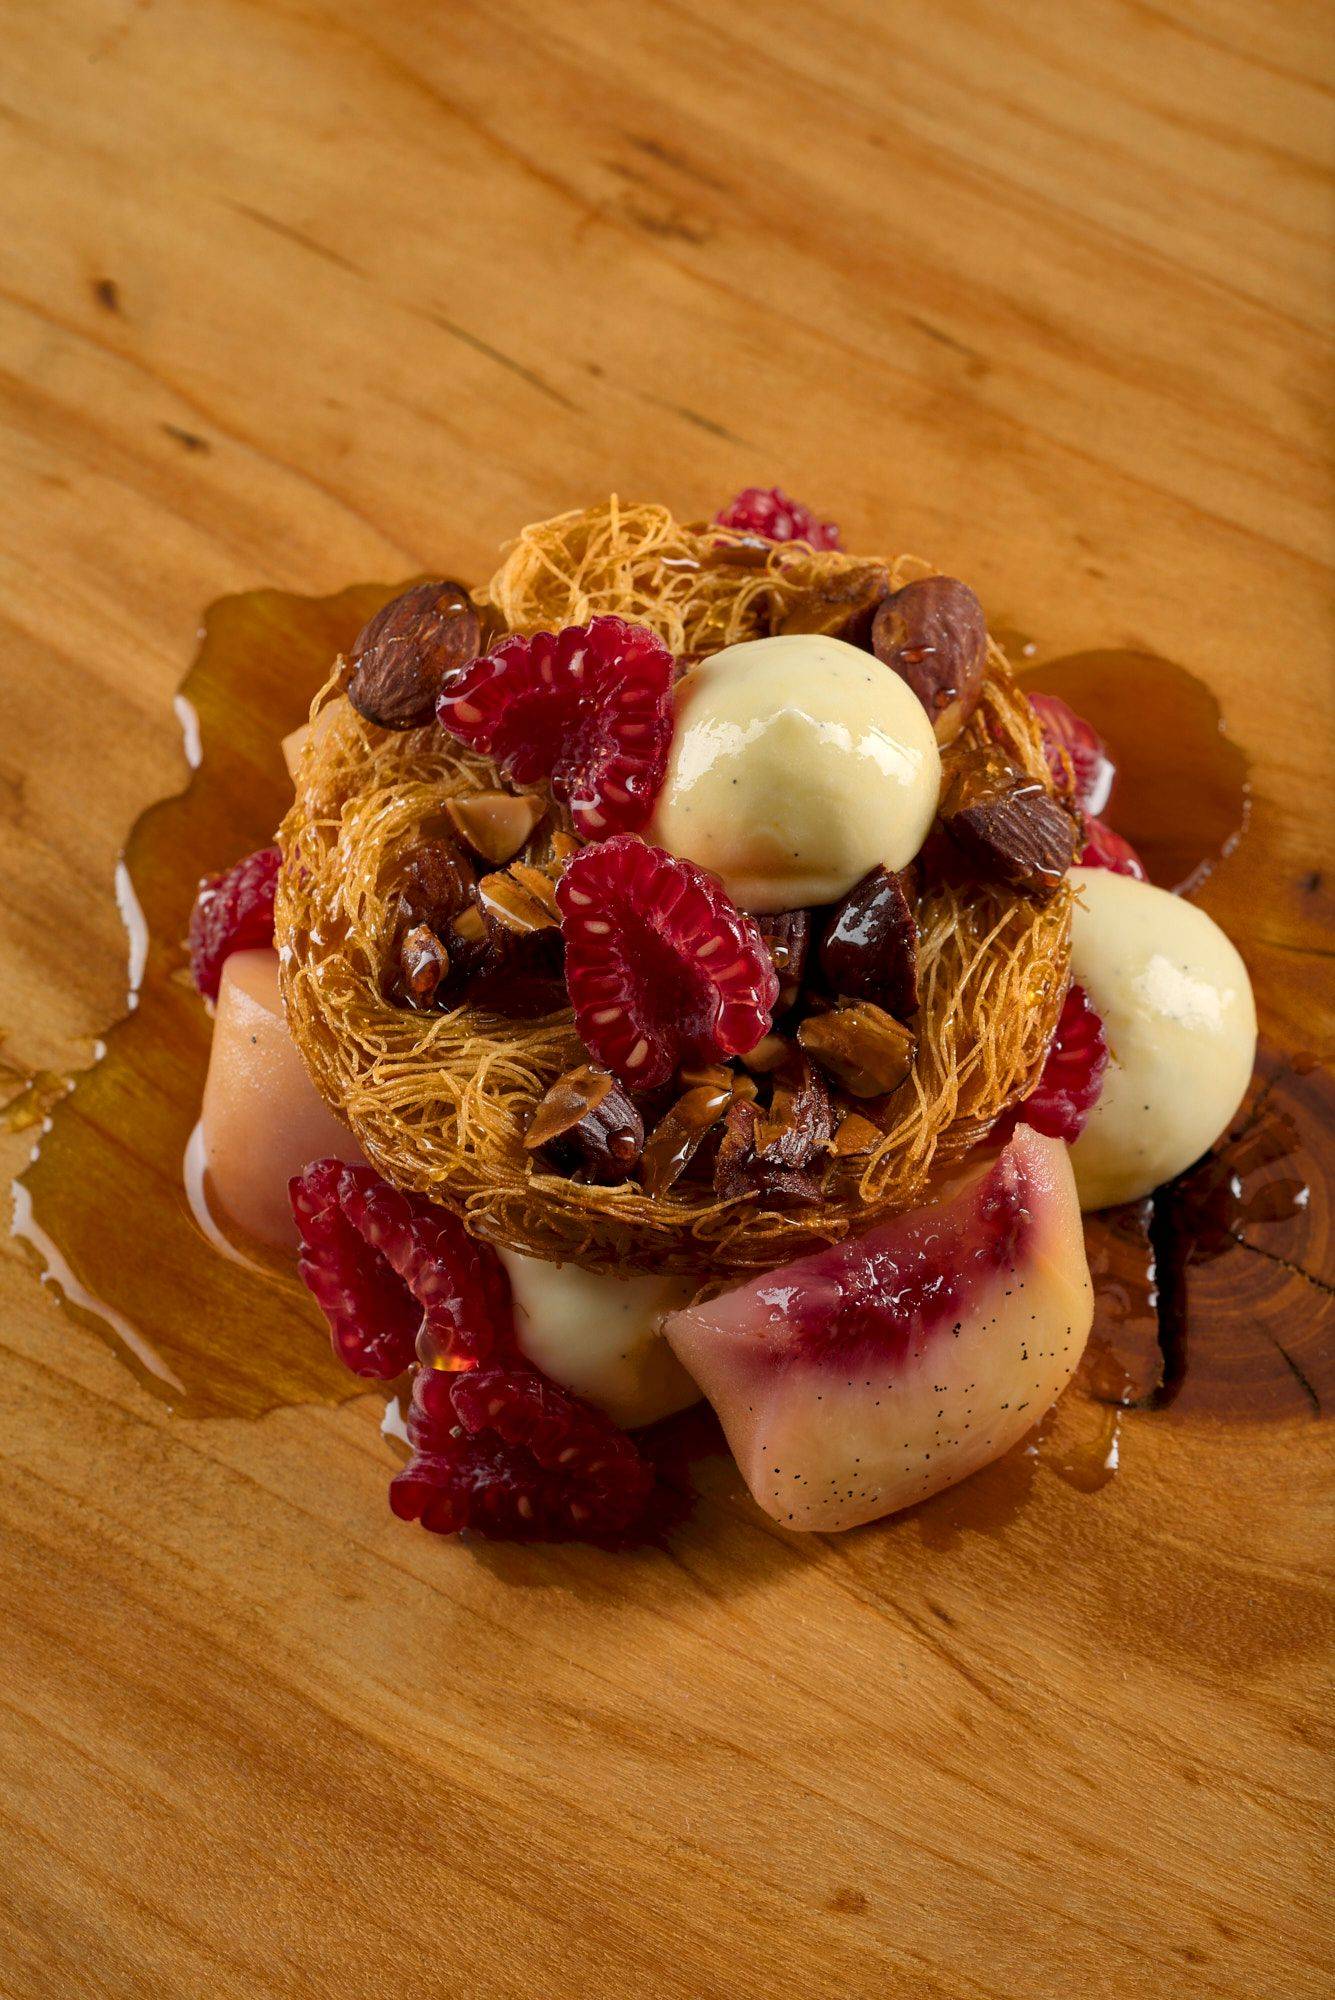 pfirsich melba dessert auf einem holzteller mit marmoriertem sapienstone top 